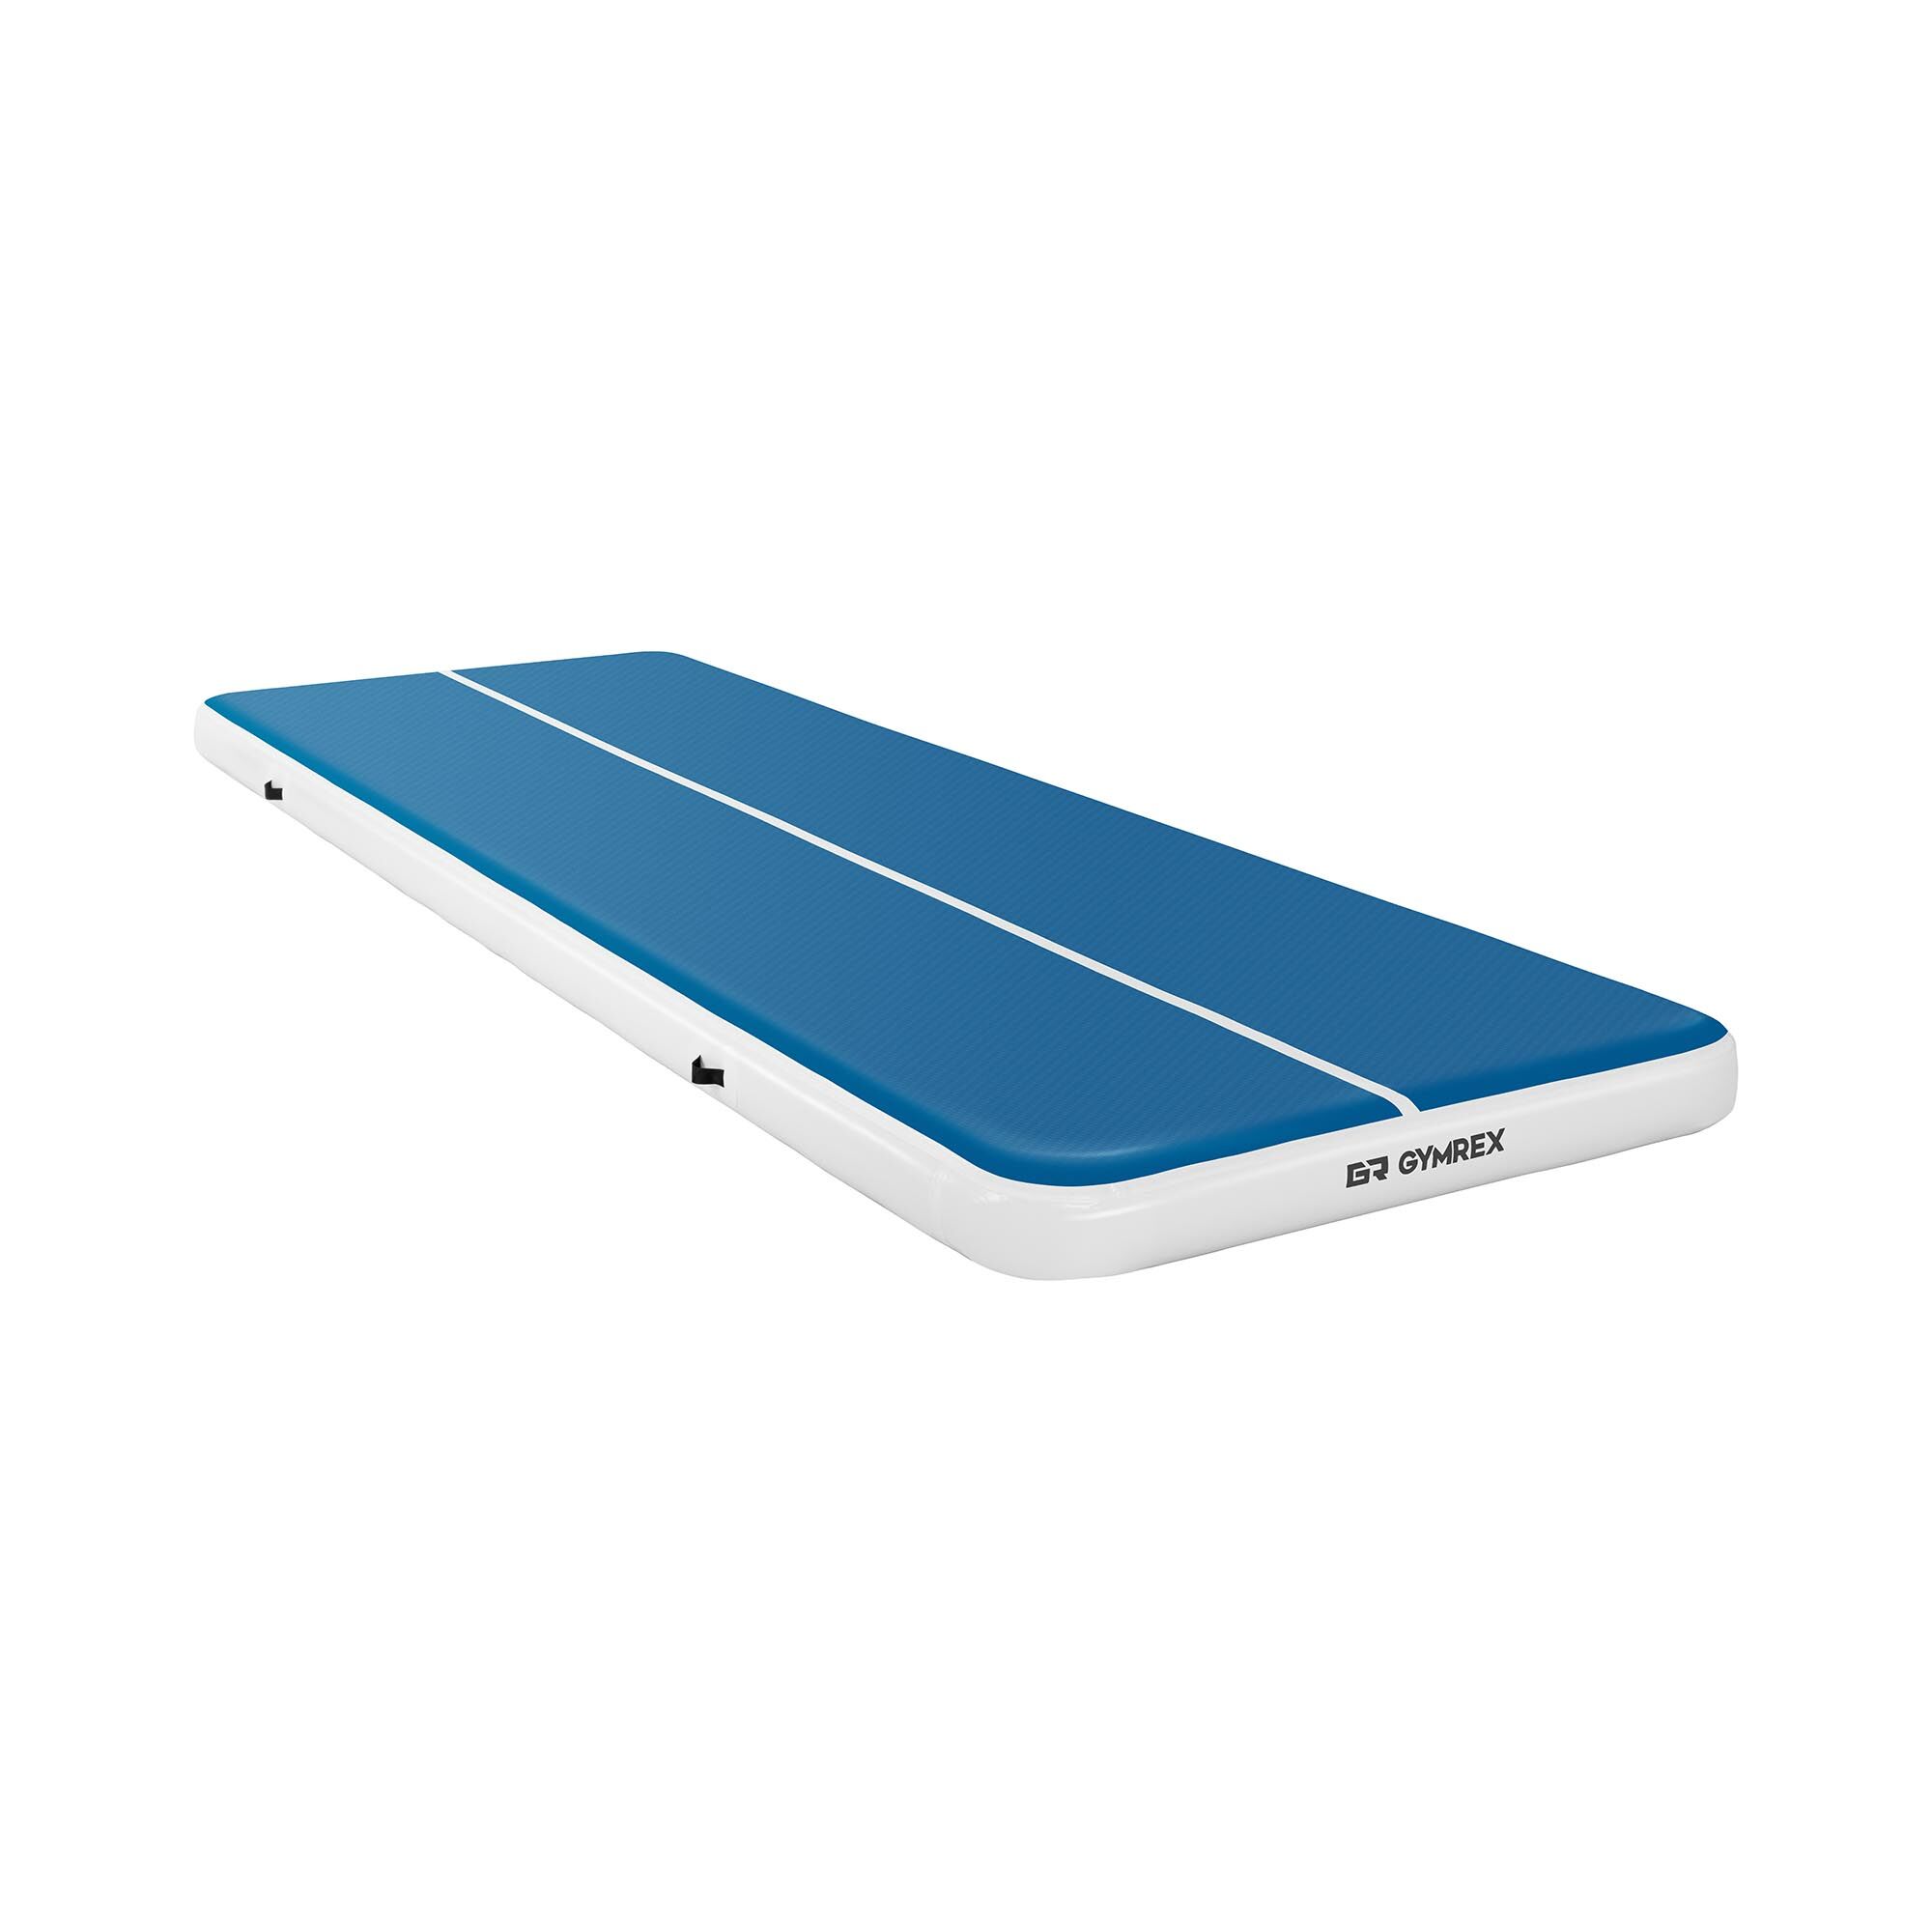 Gymrex Aufblasbare Turnmatte - Airtrack - 600 x 200 x 20 cm - 400 kg - blau/weiß